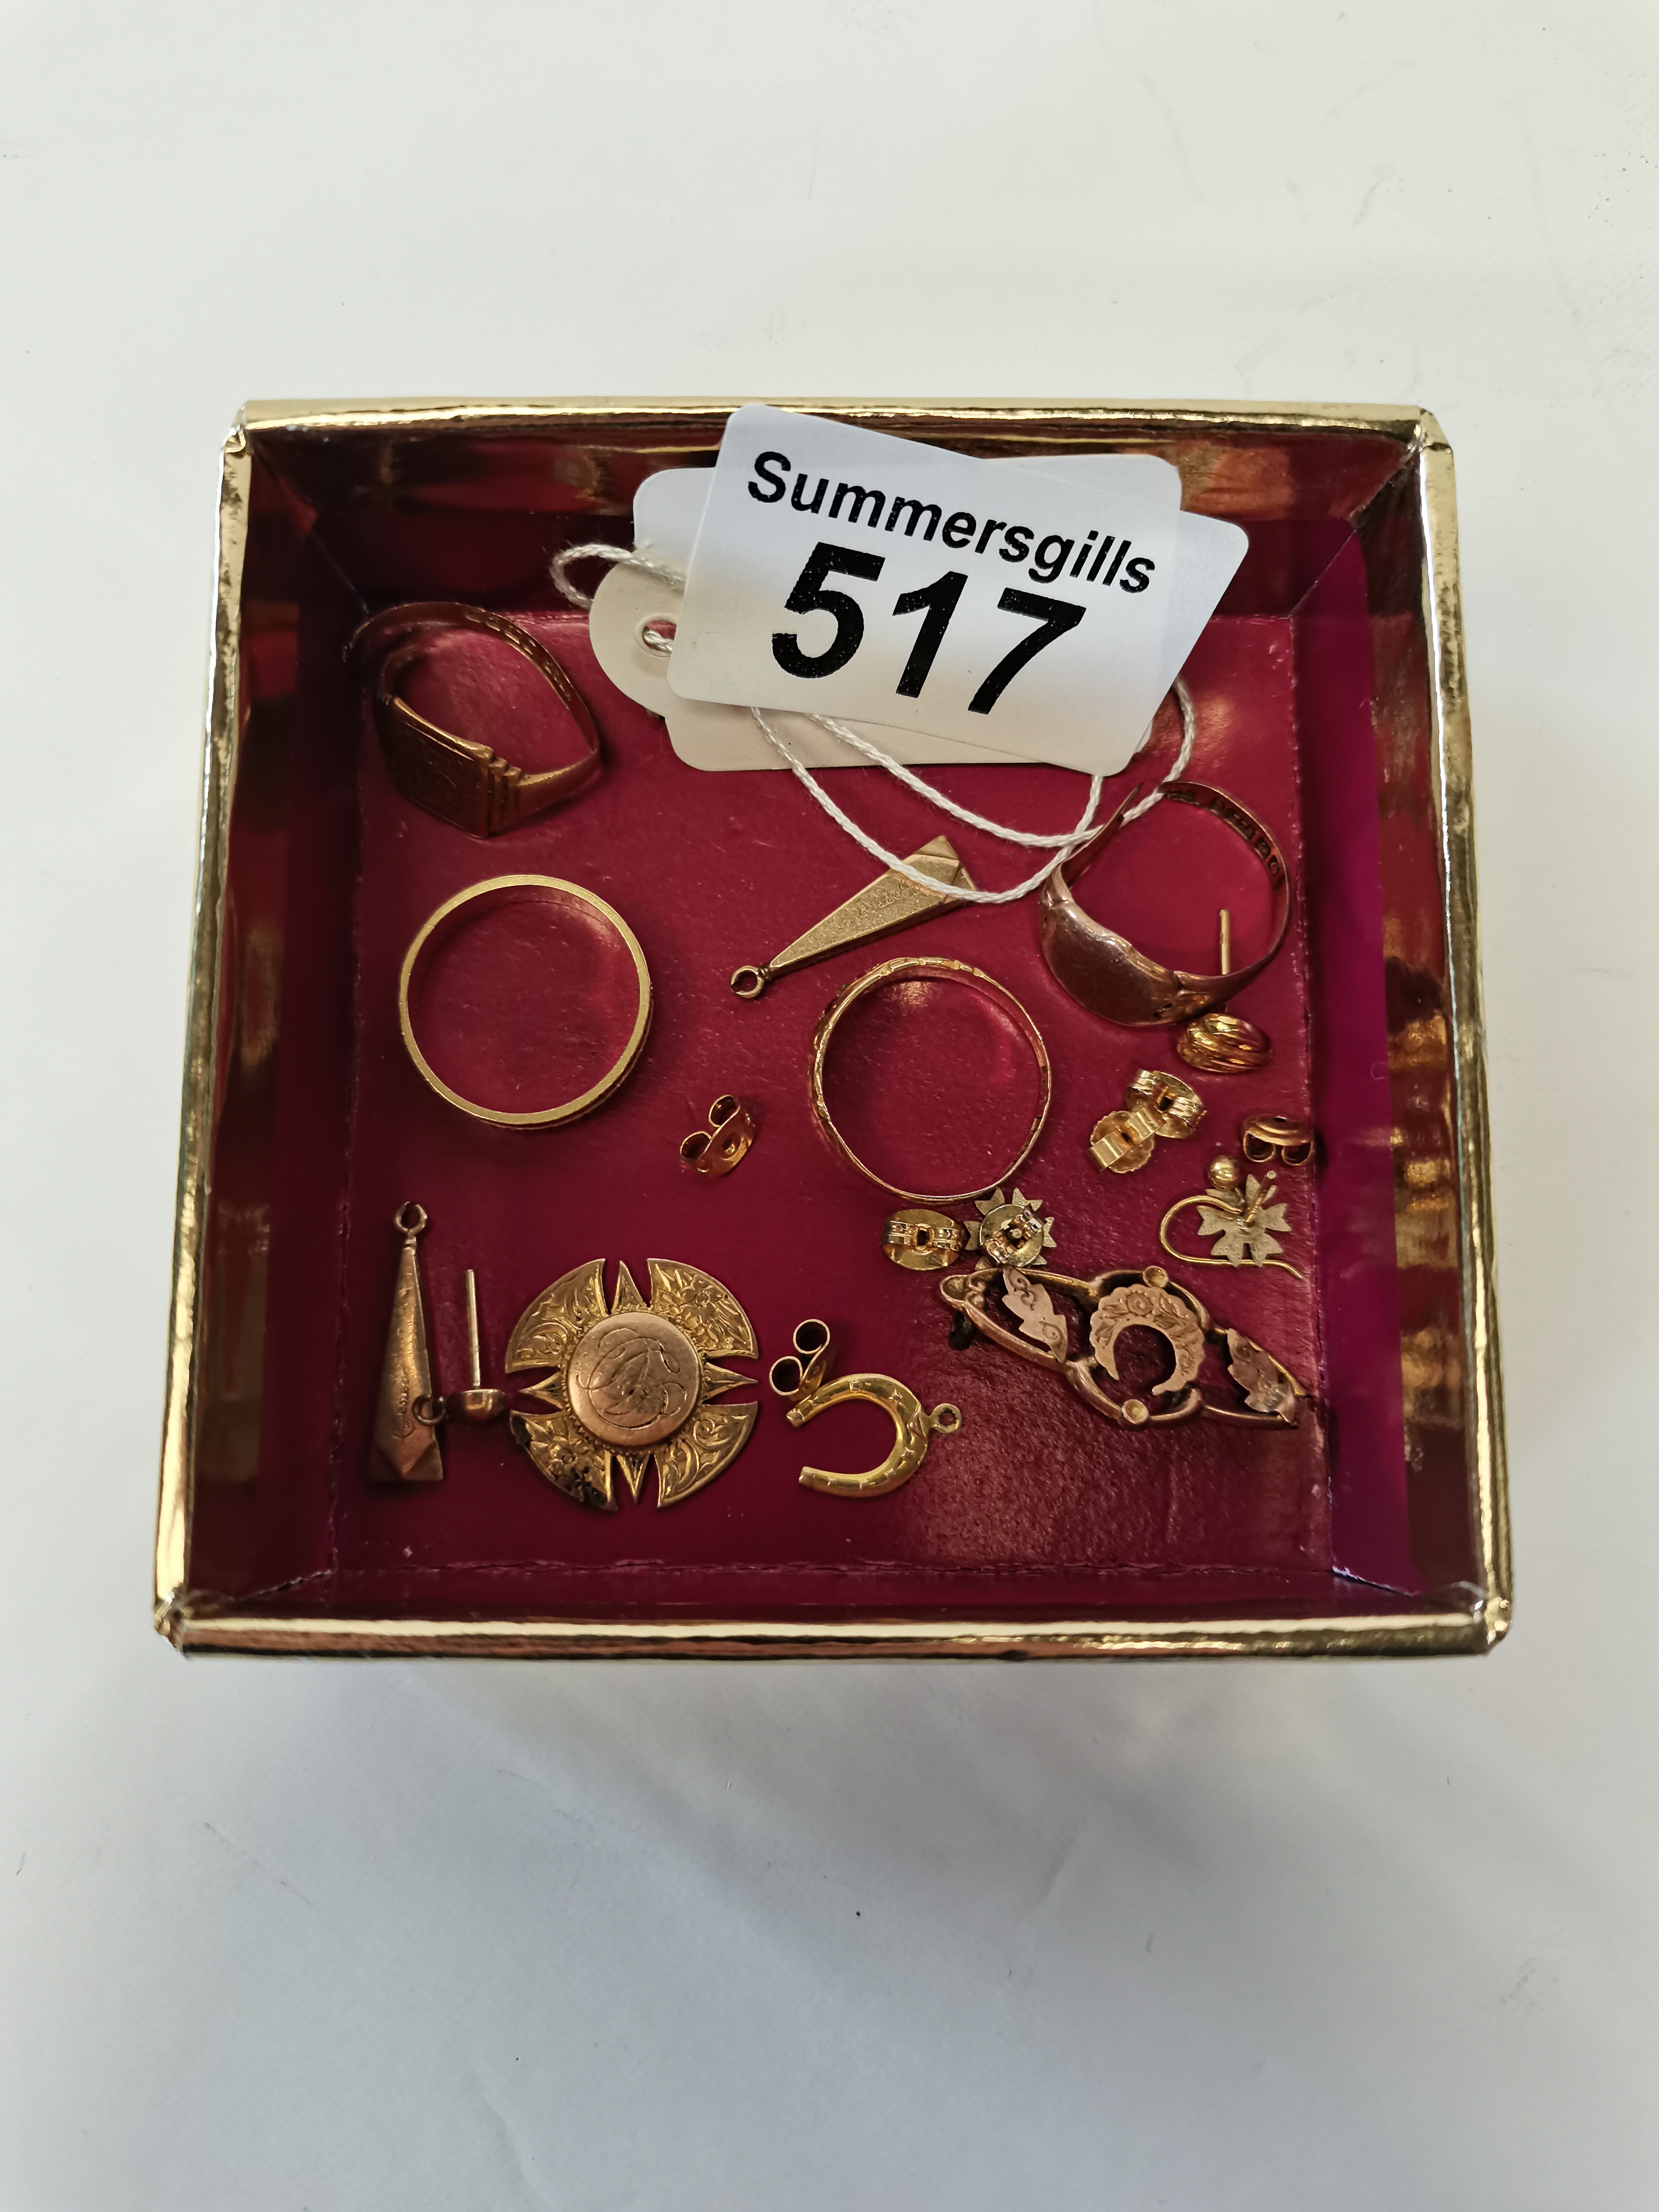 Various gold items including rings, earrings etc 19 grams